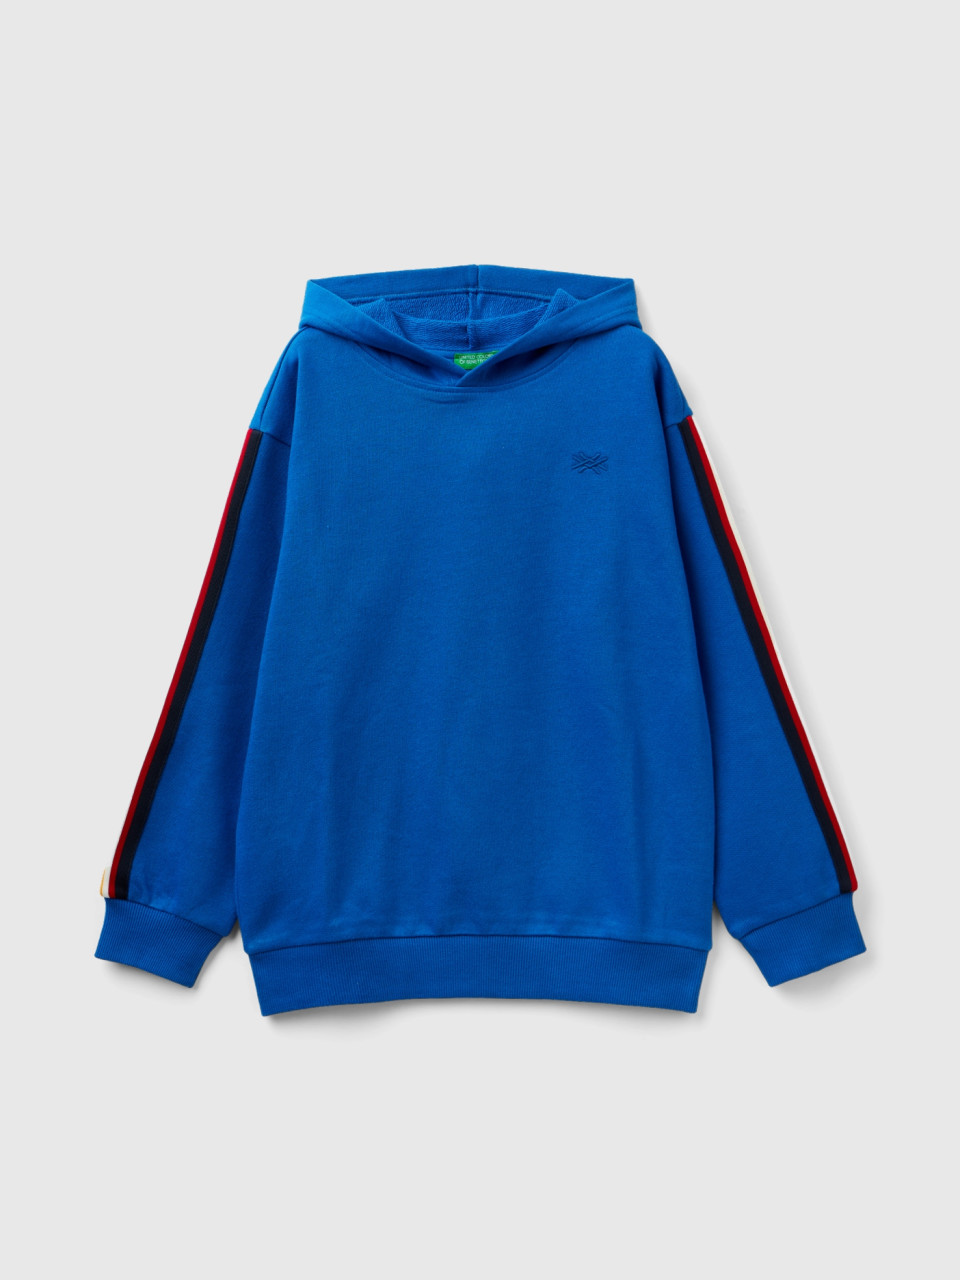 Benetton, Sweatshirt Mit Oversize-kapuze, Verkehrsblau, male